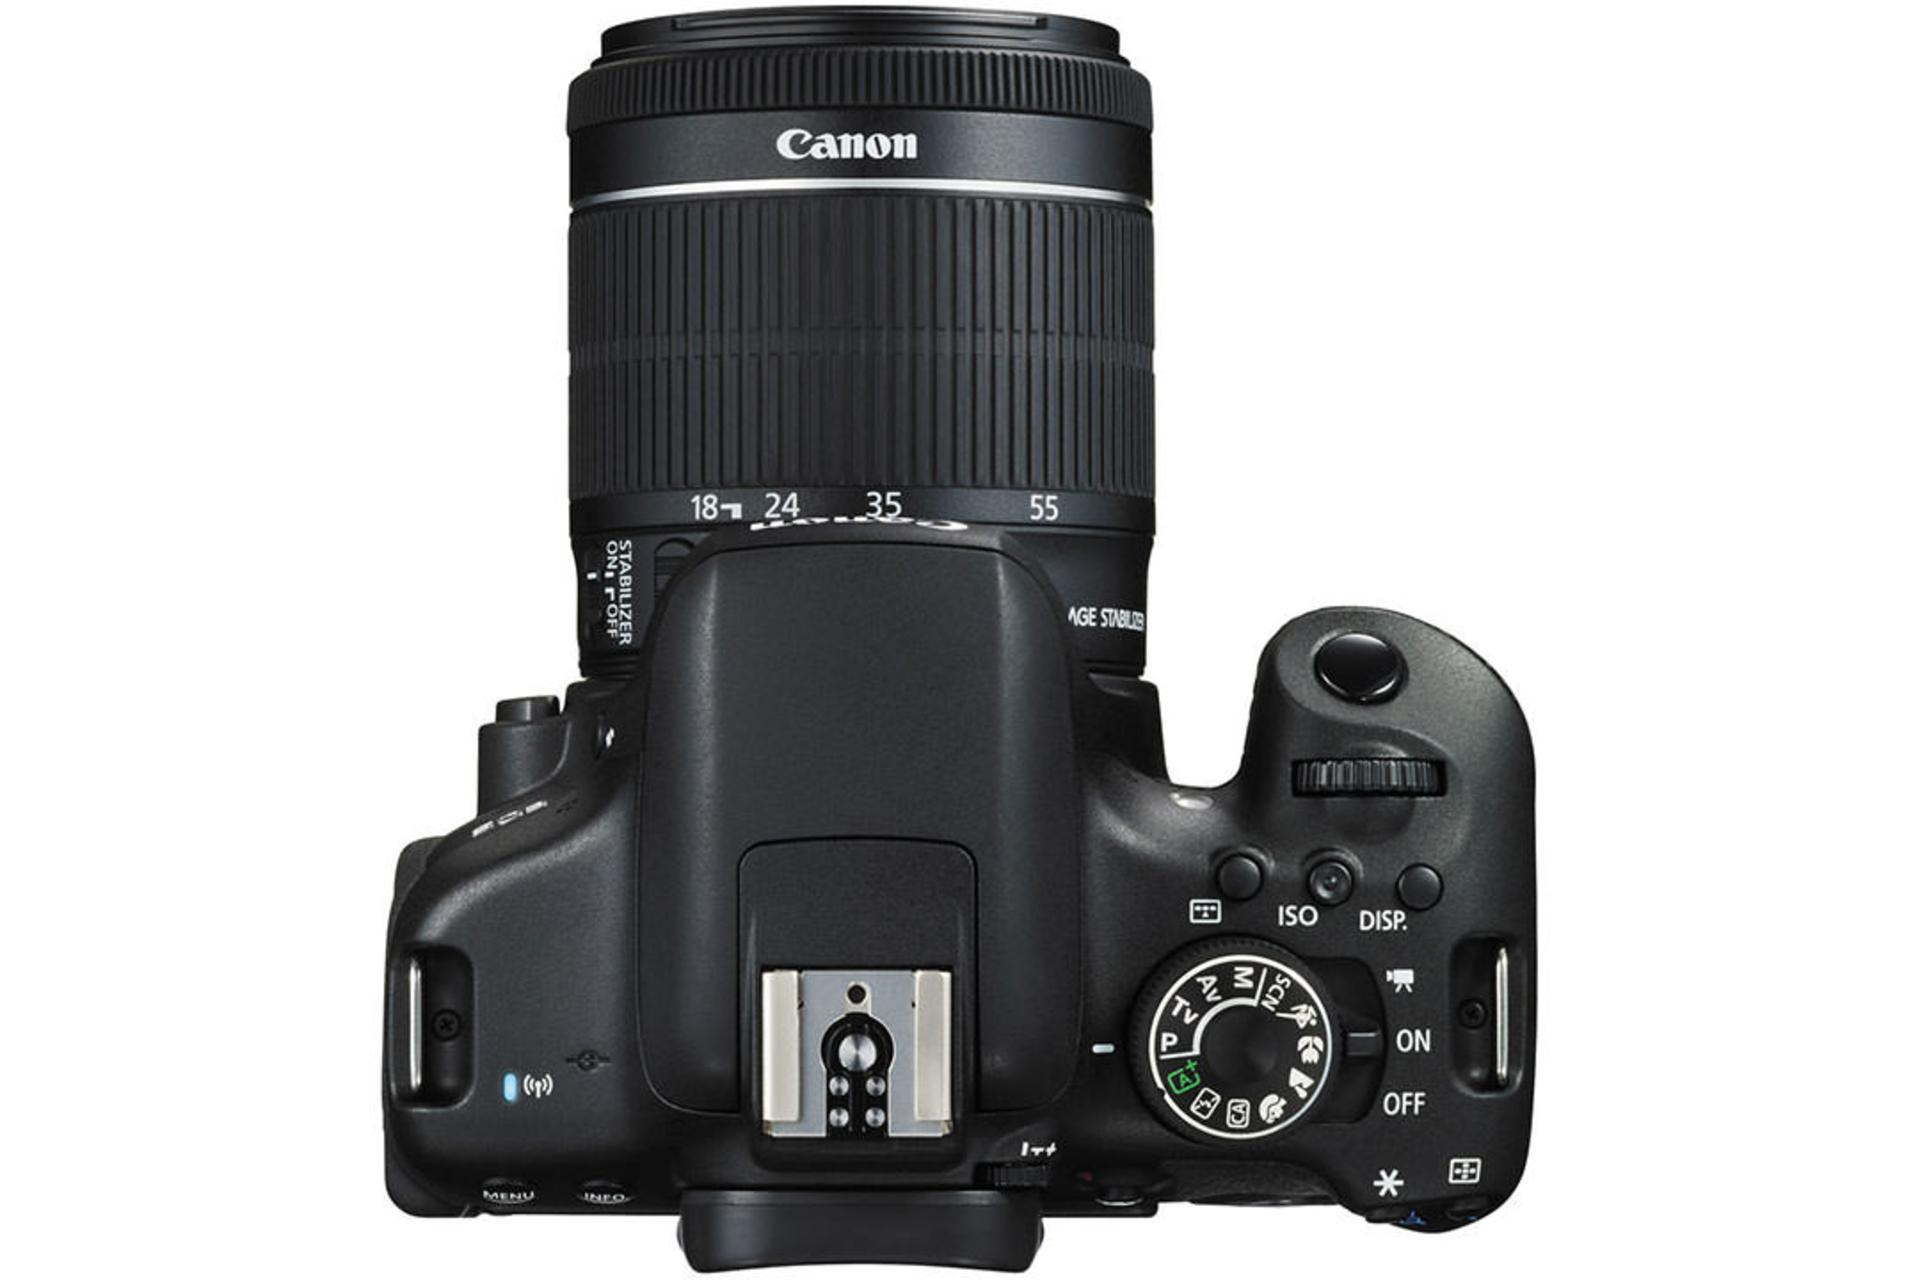 Canon EOS 750D (Rebel T6i / Kiss X8i)	